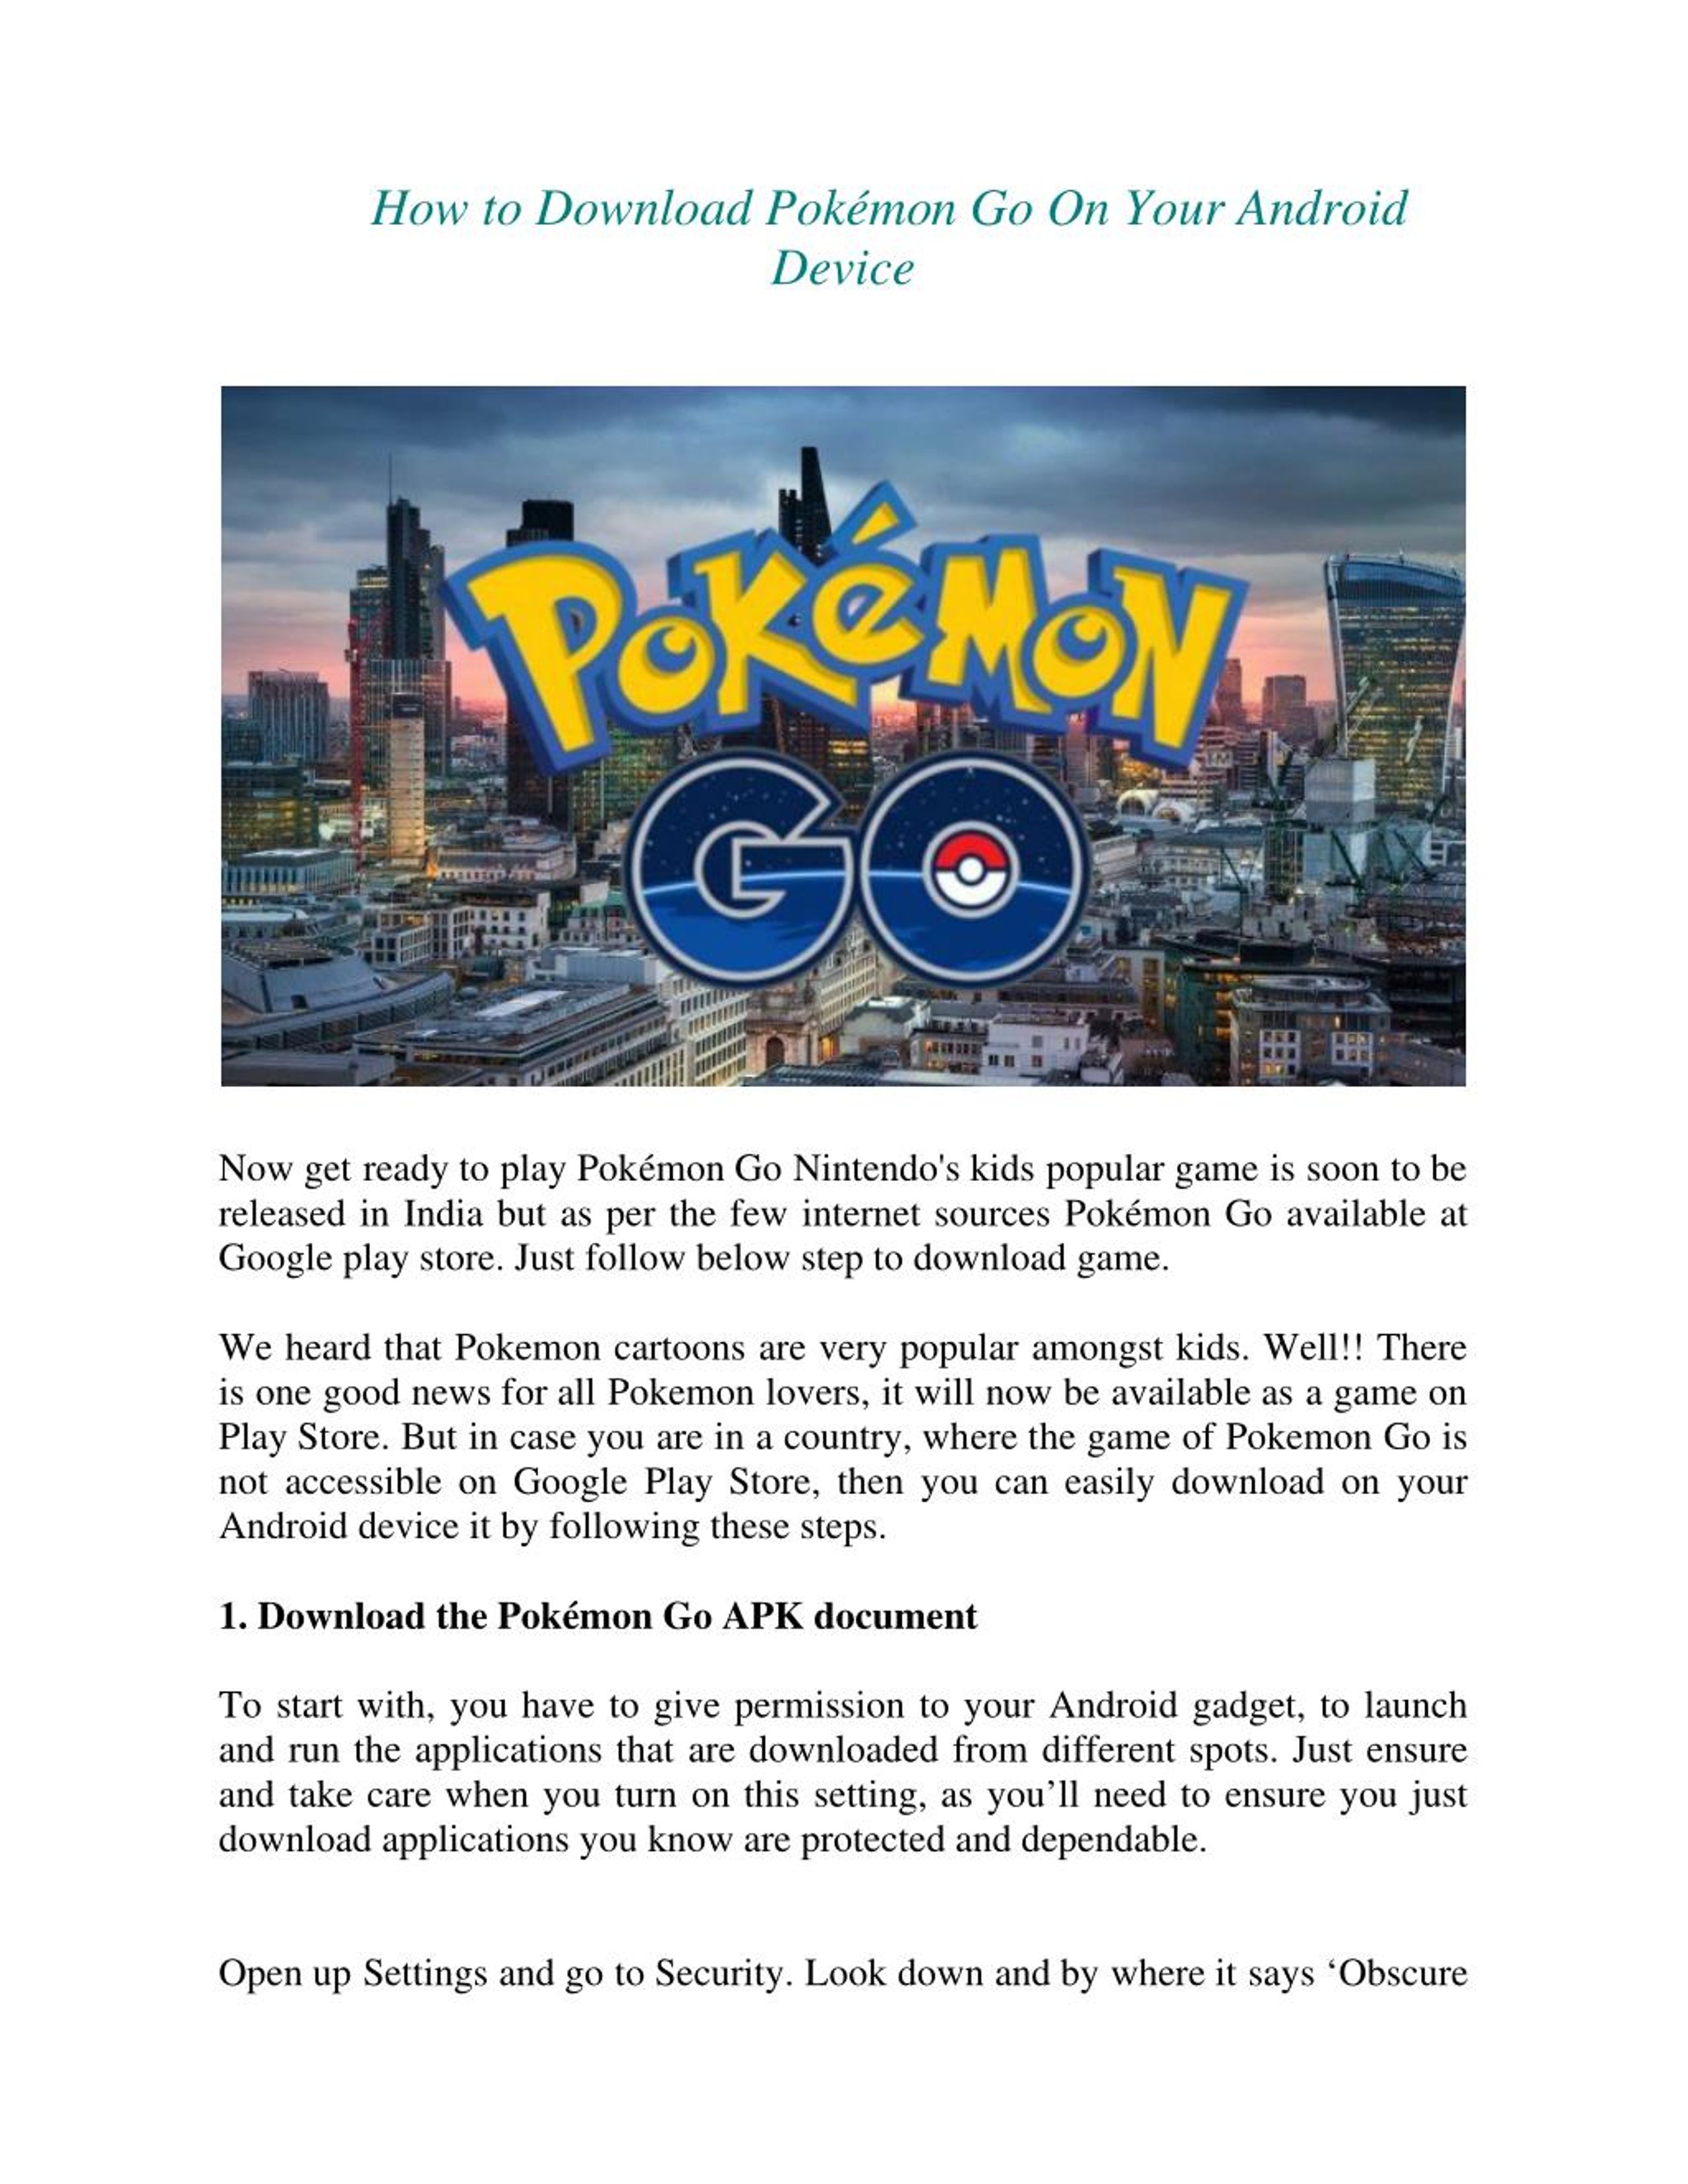 Pokémon GO - Download do APK para Android